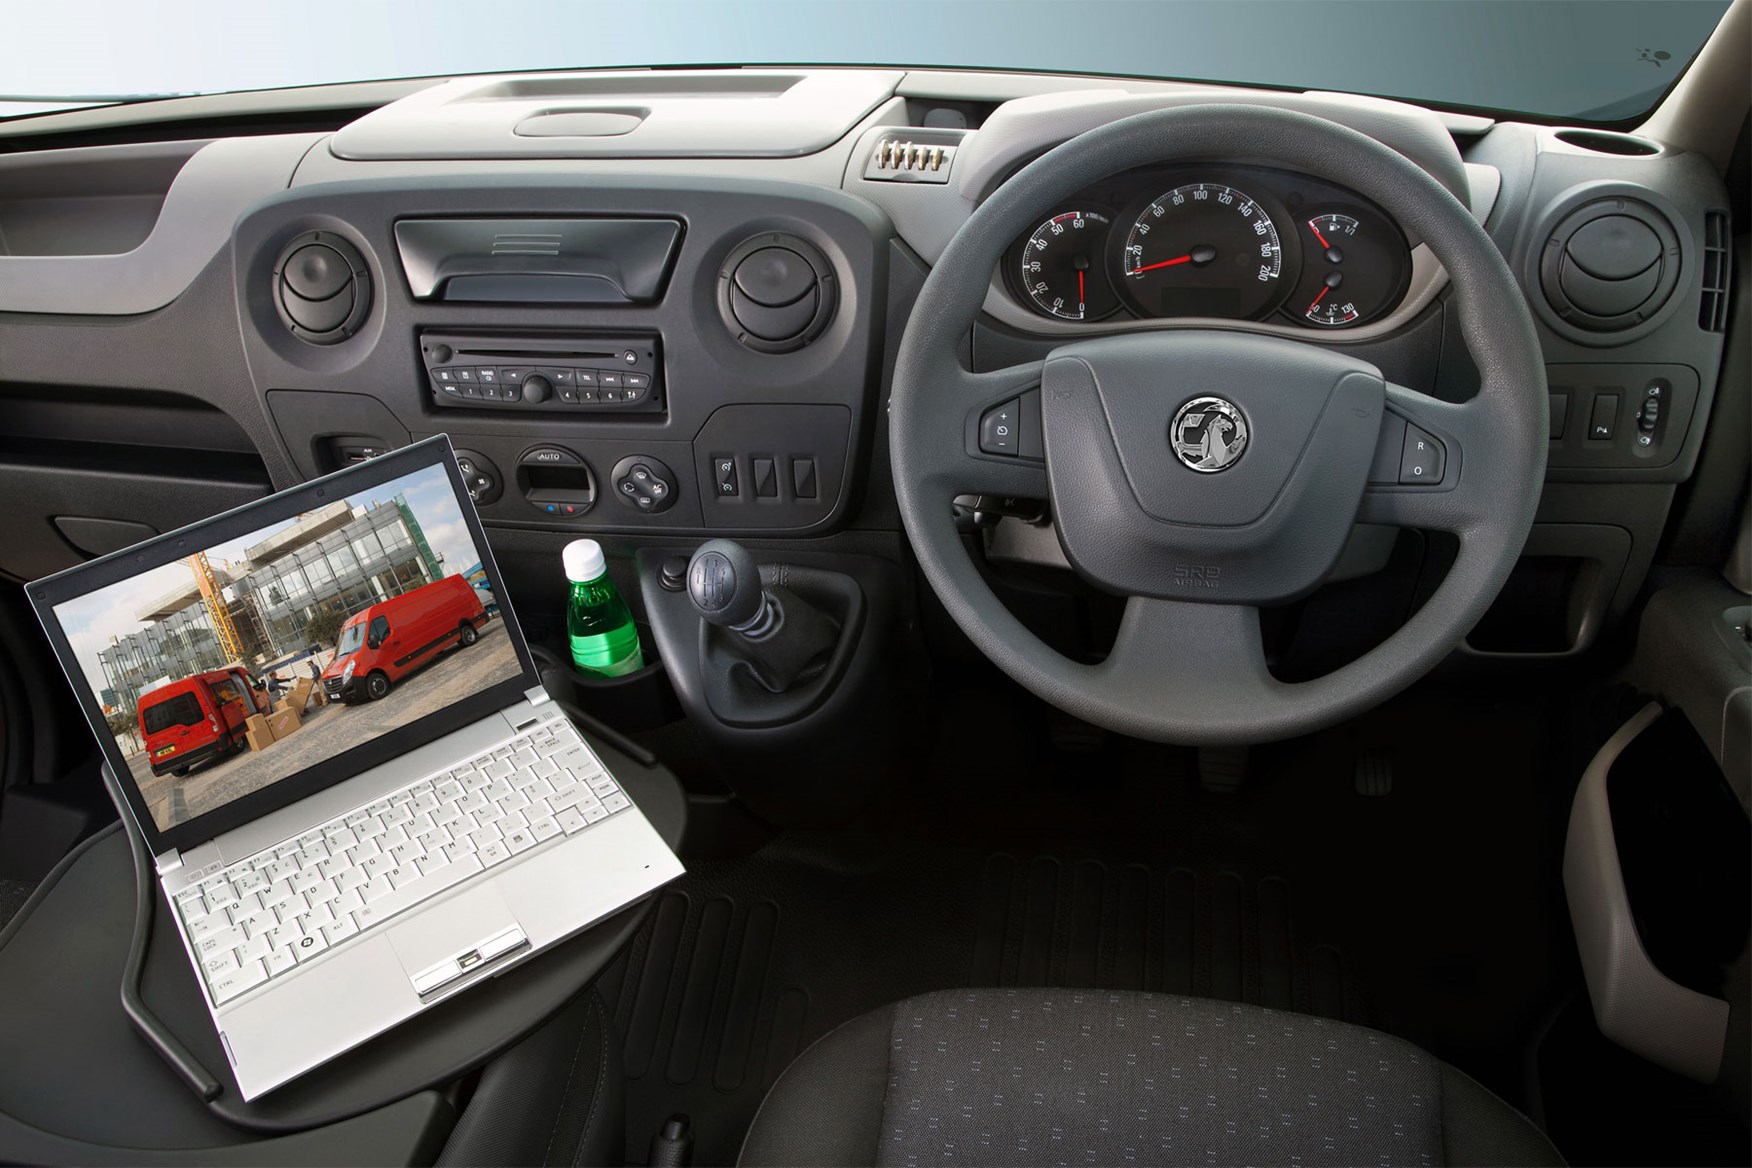 Vauxhall Movano review - original dashboard design, 2010